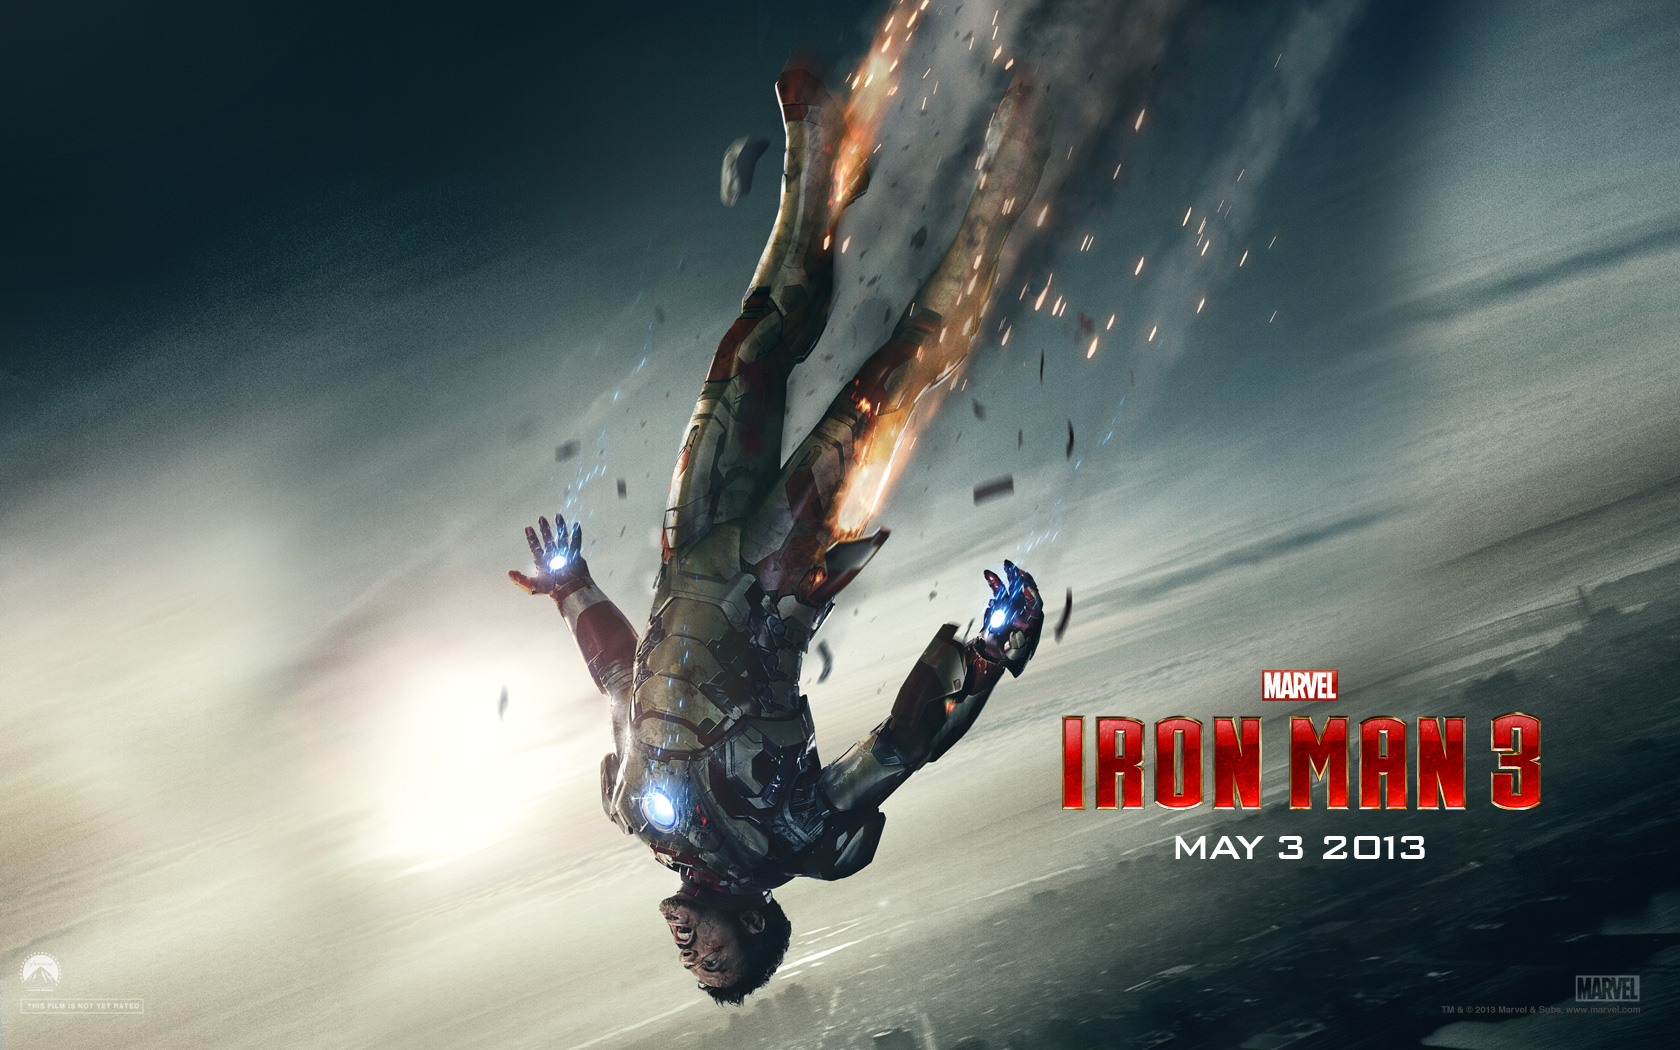 Podcast: Iron Man 3, Top 3 Trilogies, Australia – Episode 11